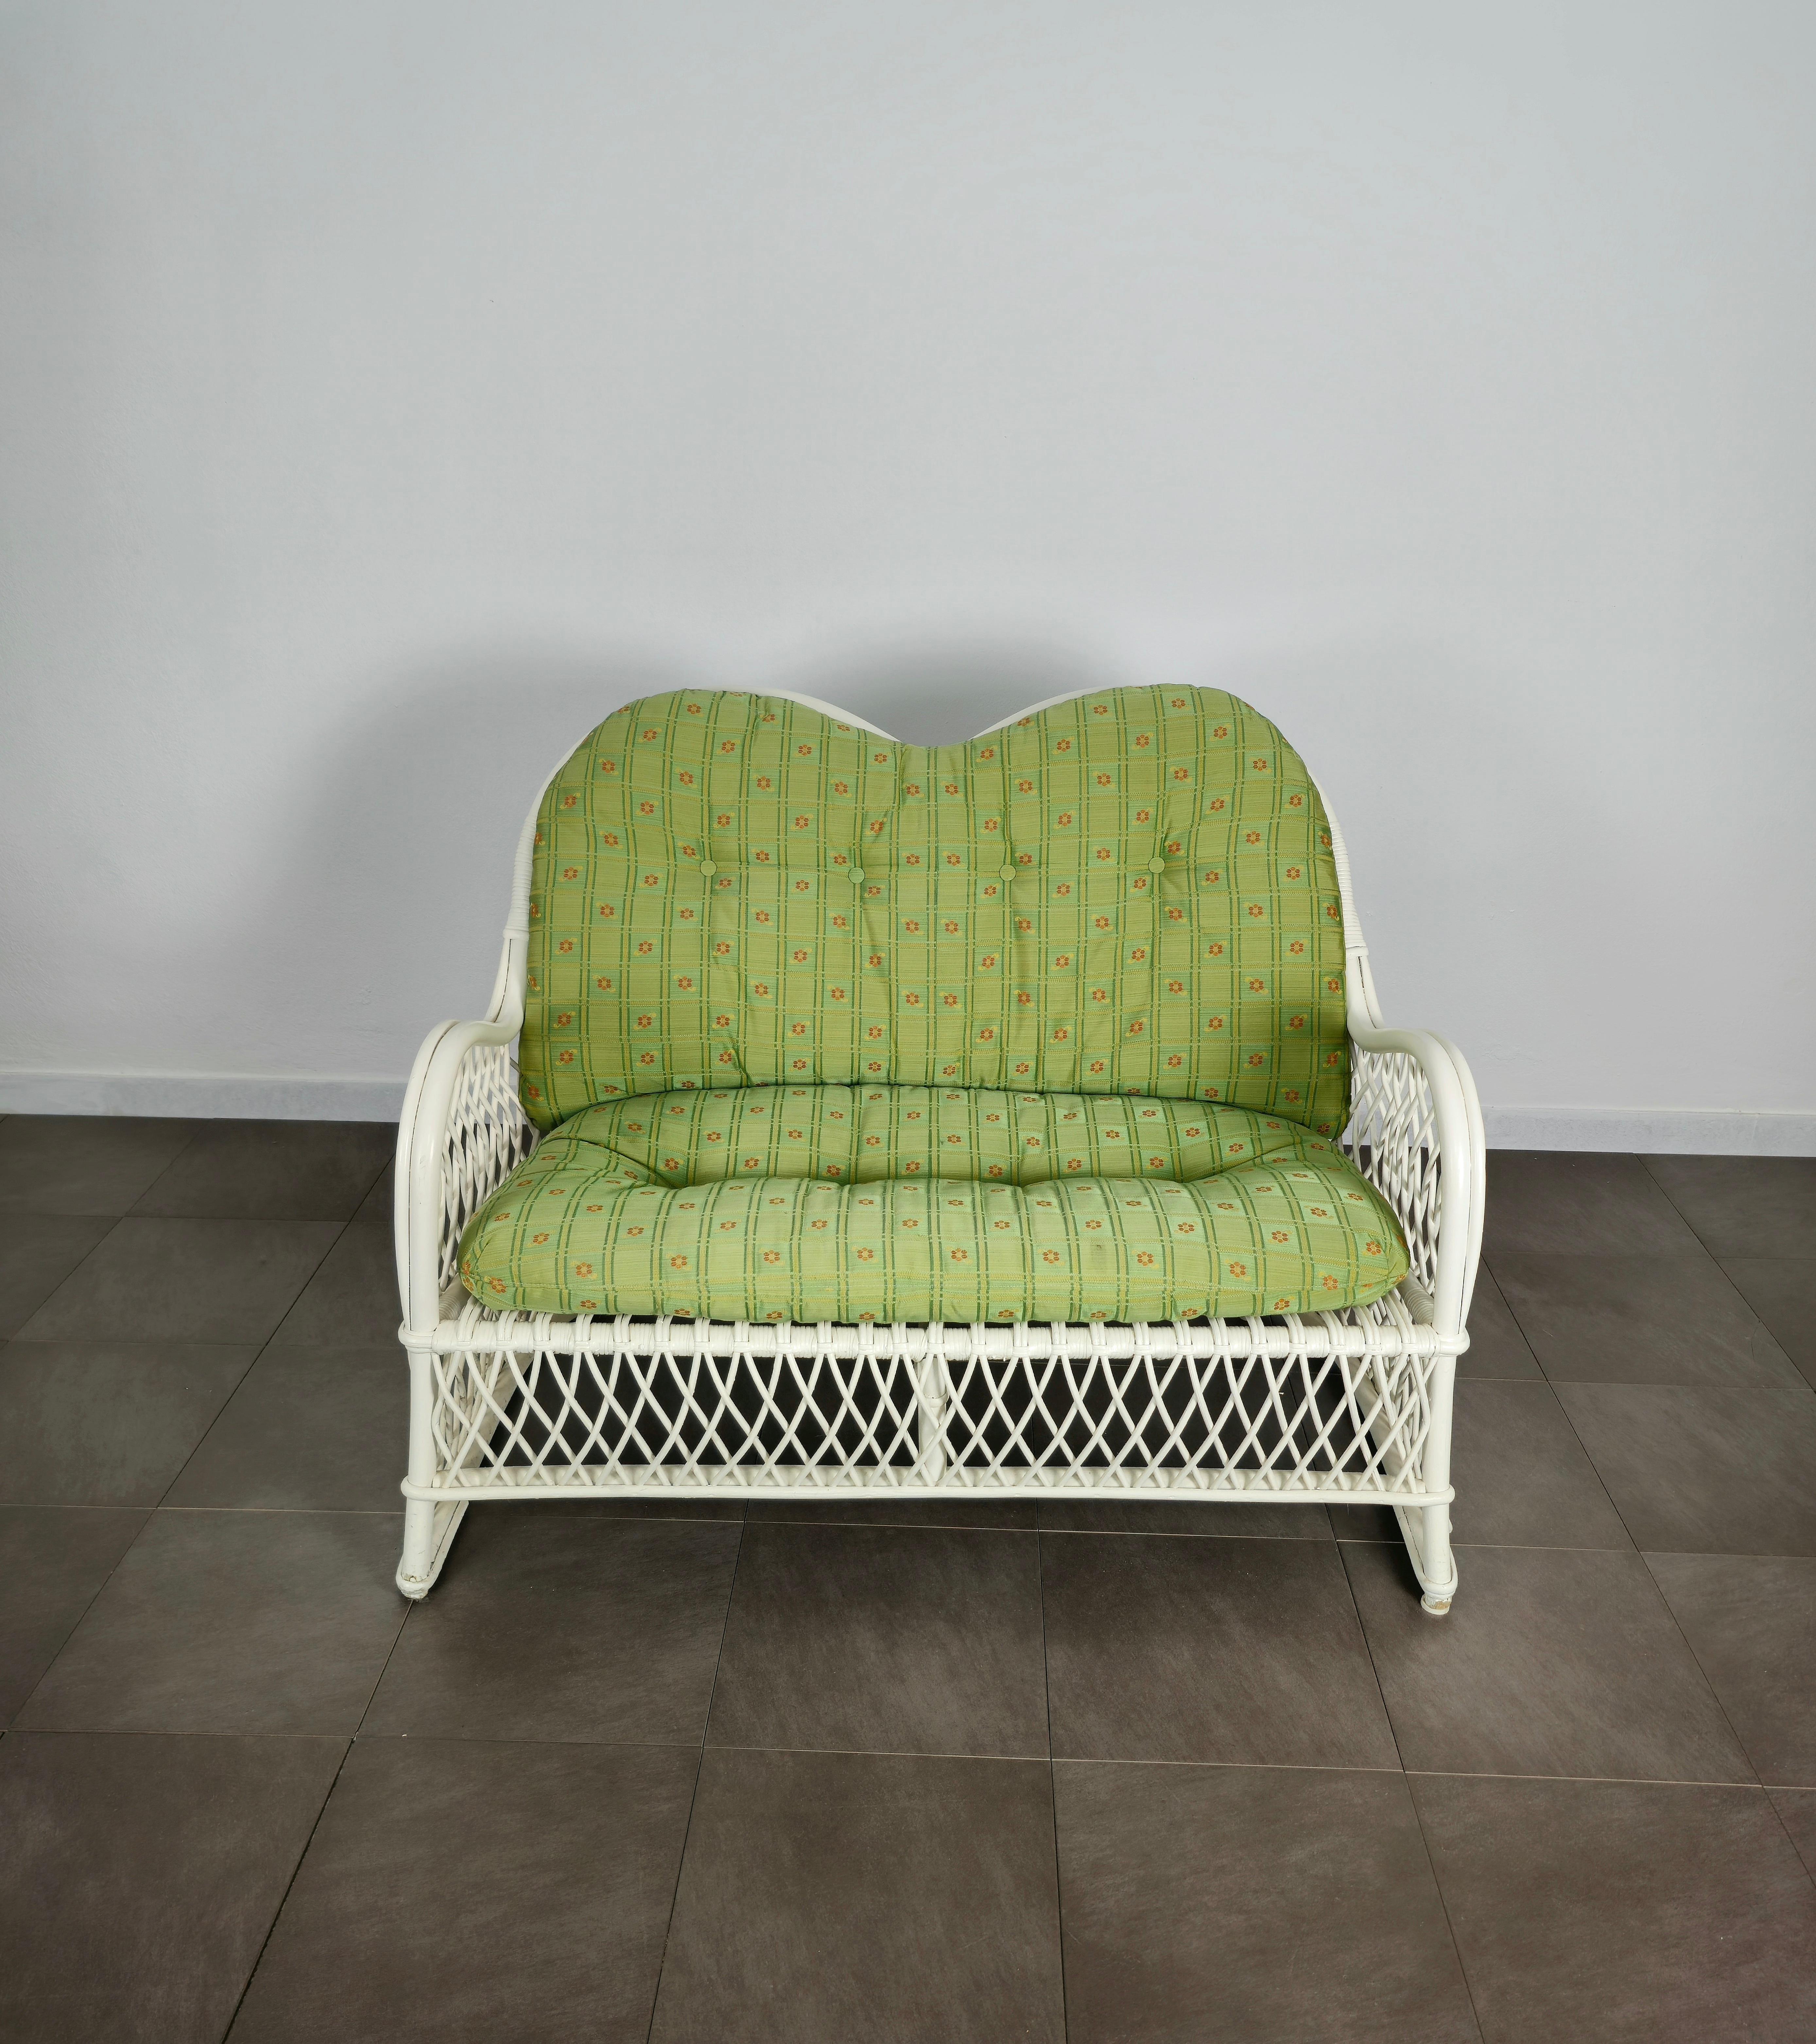 Zweisitziges Sofa, das Vivai del sud zugeschrieben wird und in den 170er Jahren in Italien hergestellt wurde.
Das Sofa wurde aus Bambus und weiß emailliertem, geflochtenem Rattan mit grün gemusterten Stoffpolstern hergestellt.




Hinweis: Wir